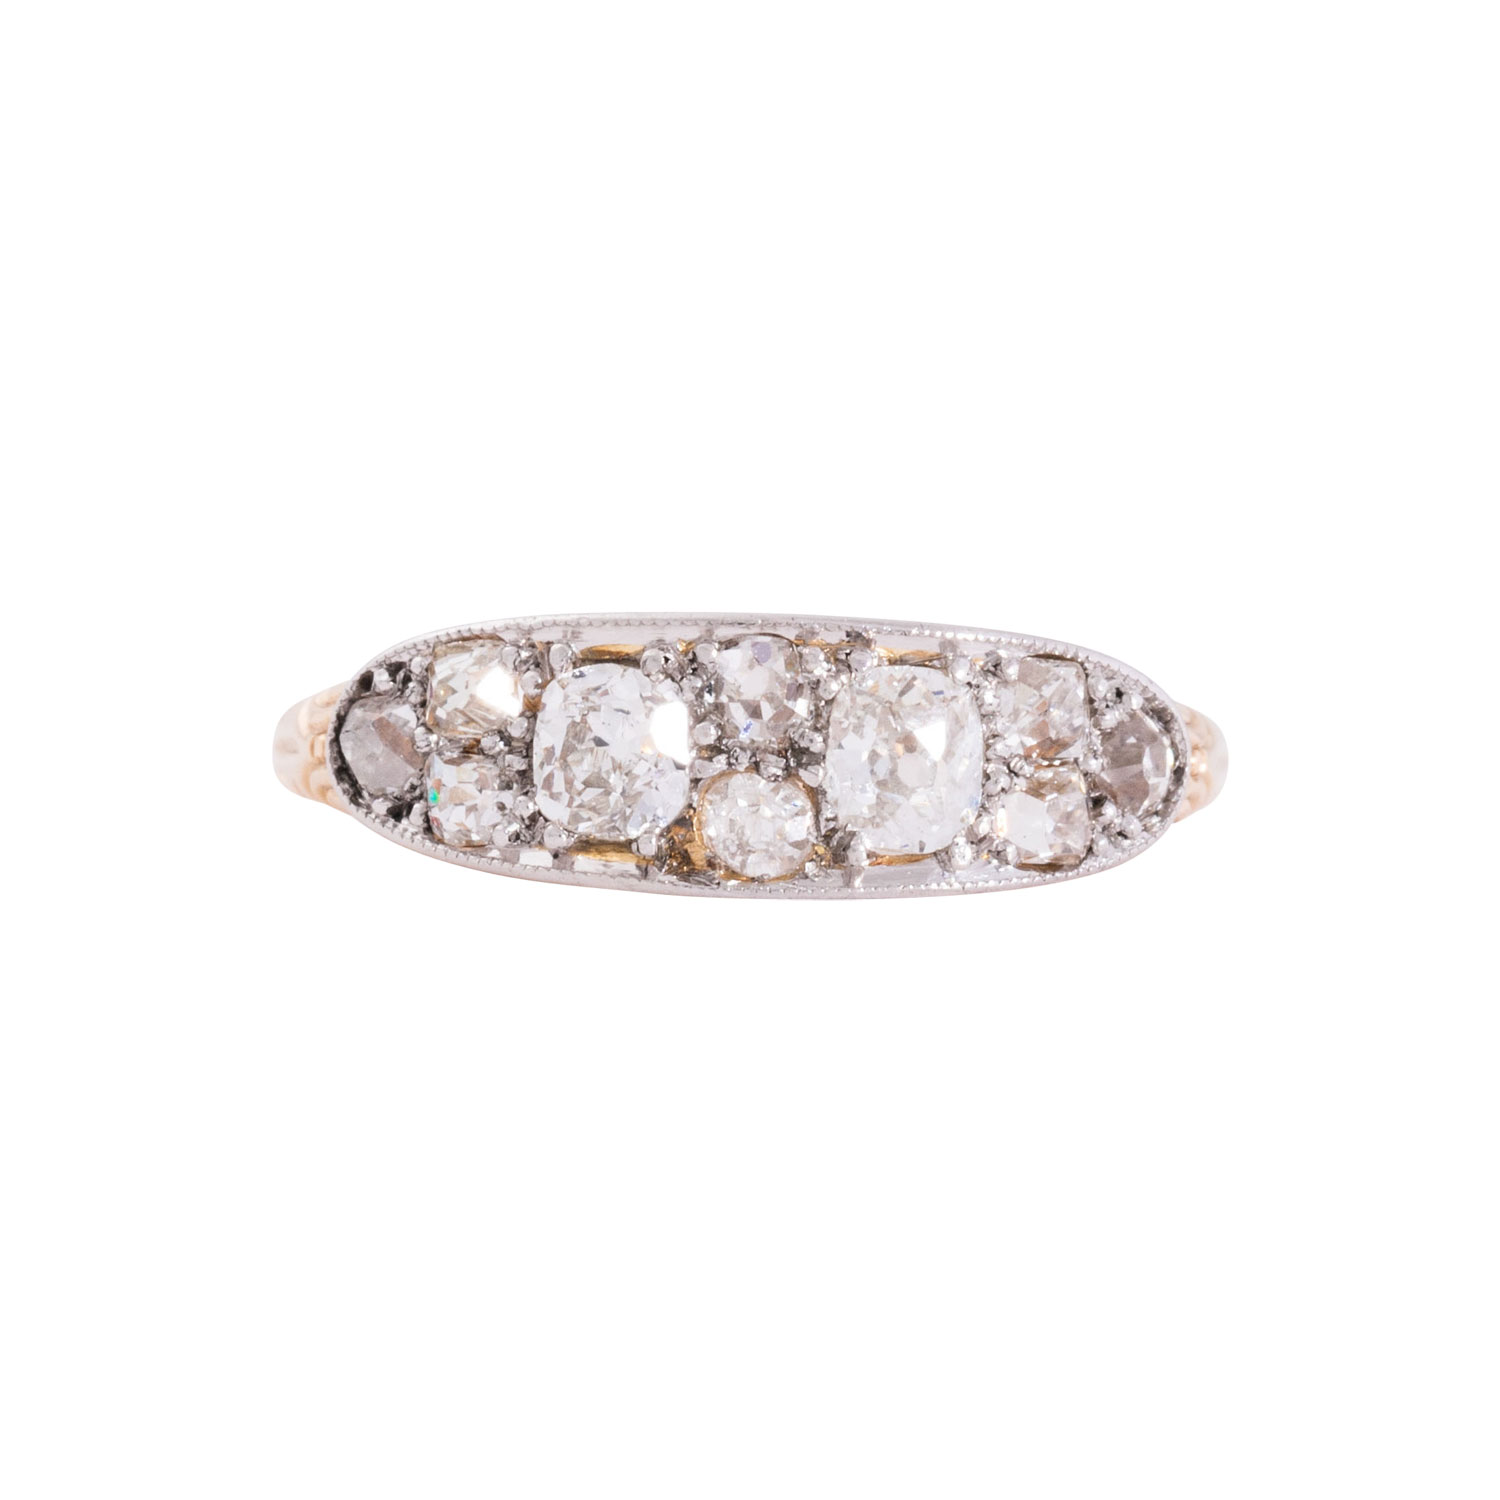 Ring mit Altschliffdiamanten von zus. ca. 0,8 ct, - Image 2 of 4